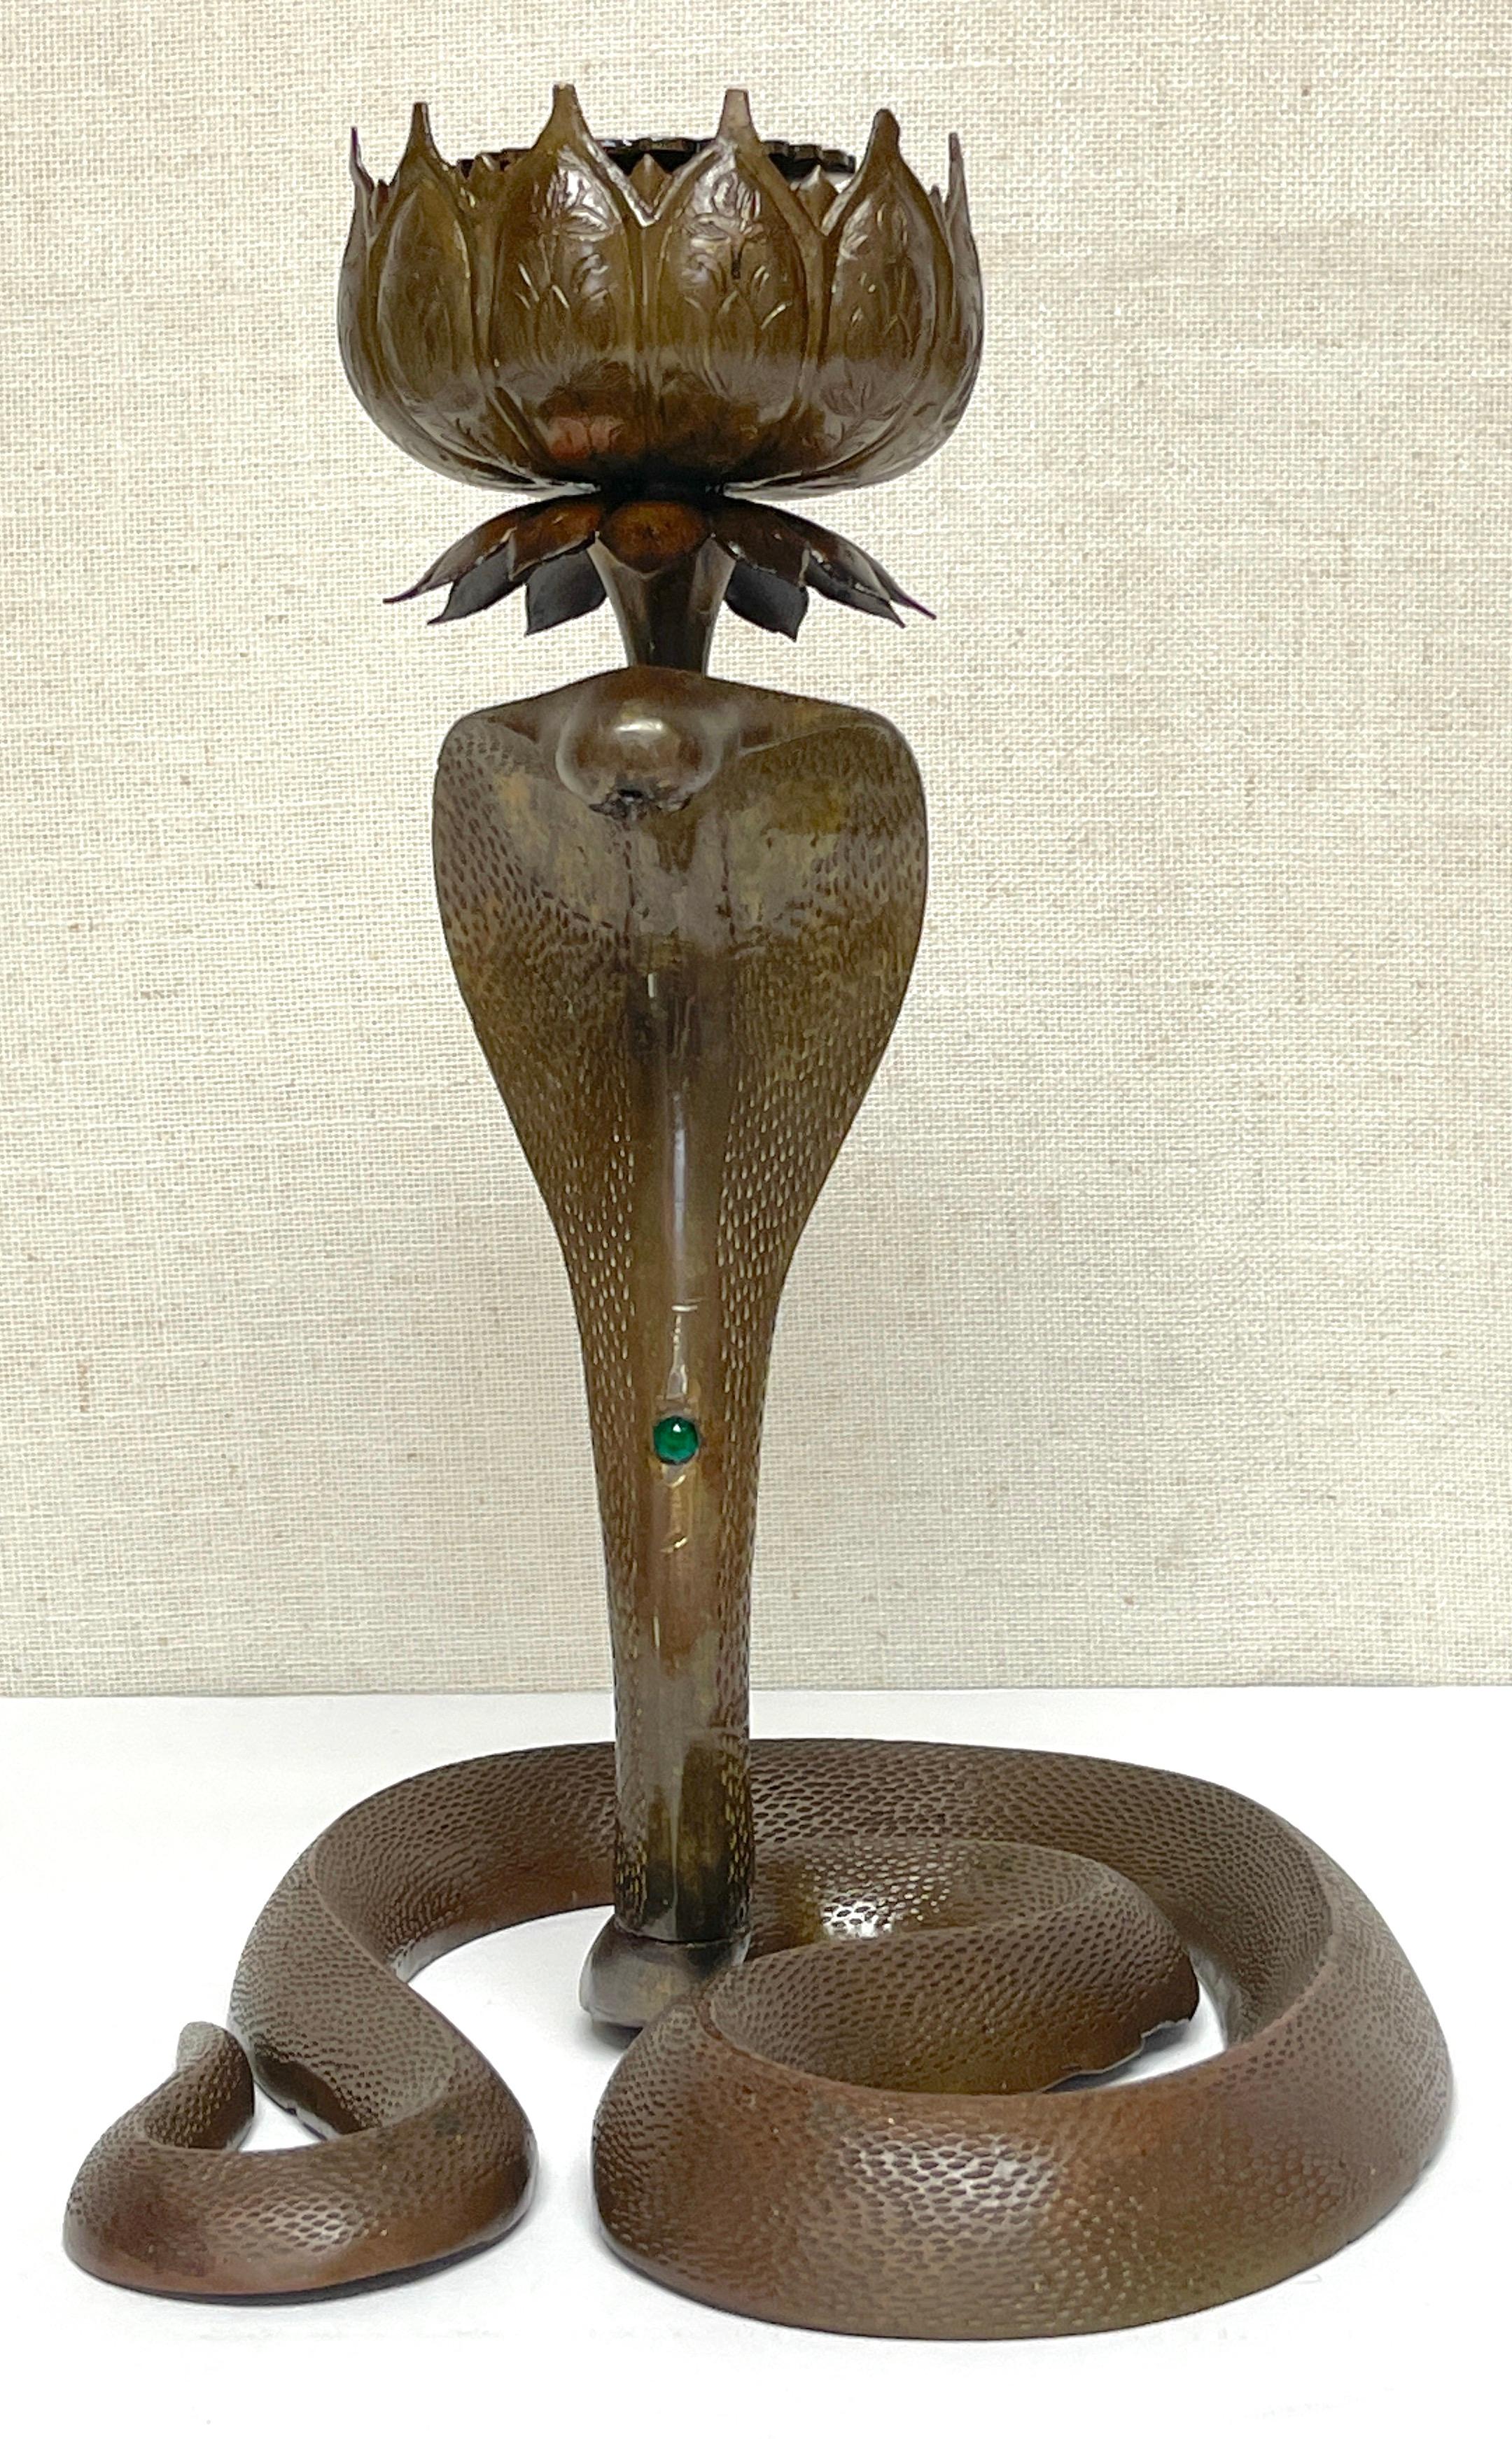 Chandelier anglo-indien du 19e siècle en bronze gravé et orné de bijoux Cobra 
Inde, vers 1890

L'un des plus beaux exemples de chandeliers en bronze cobra anglo-indien de la fin du XIXe siècle, fabriqués pour le marché britannique. La qualité de